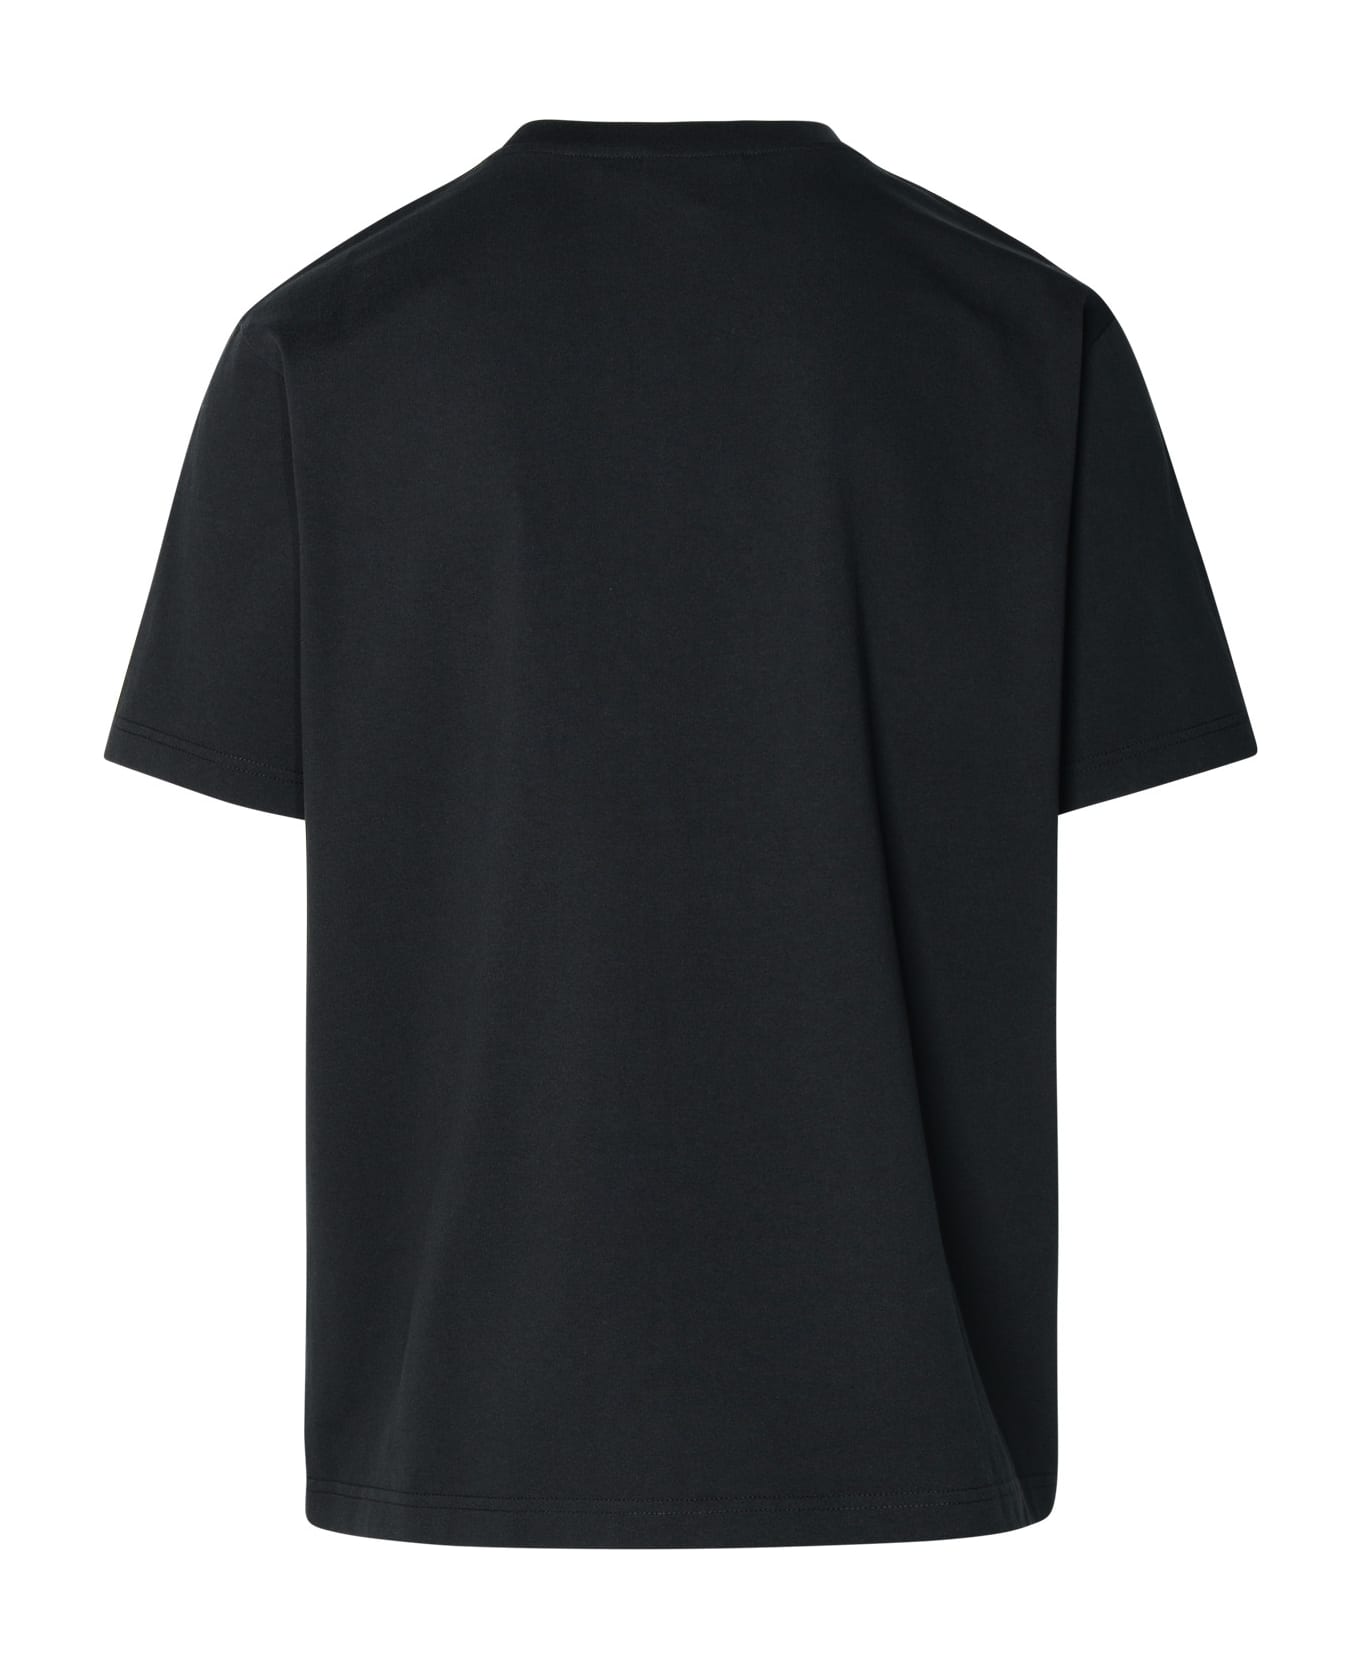 Maison Kitsuné Black Cotton T-shirt - Black シャツ